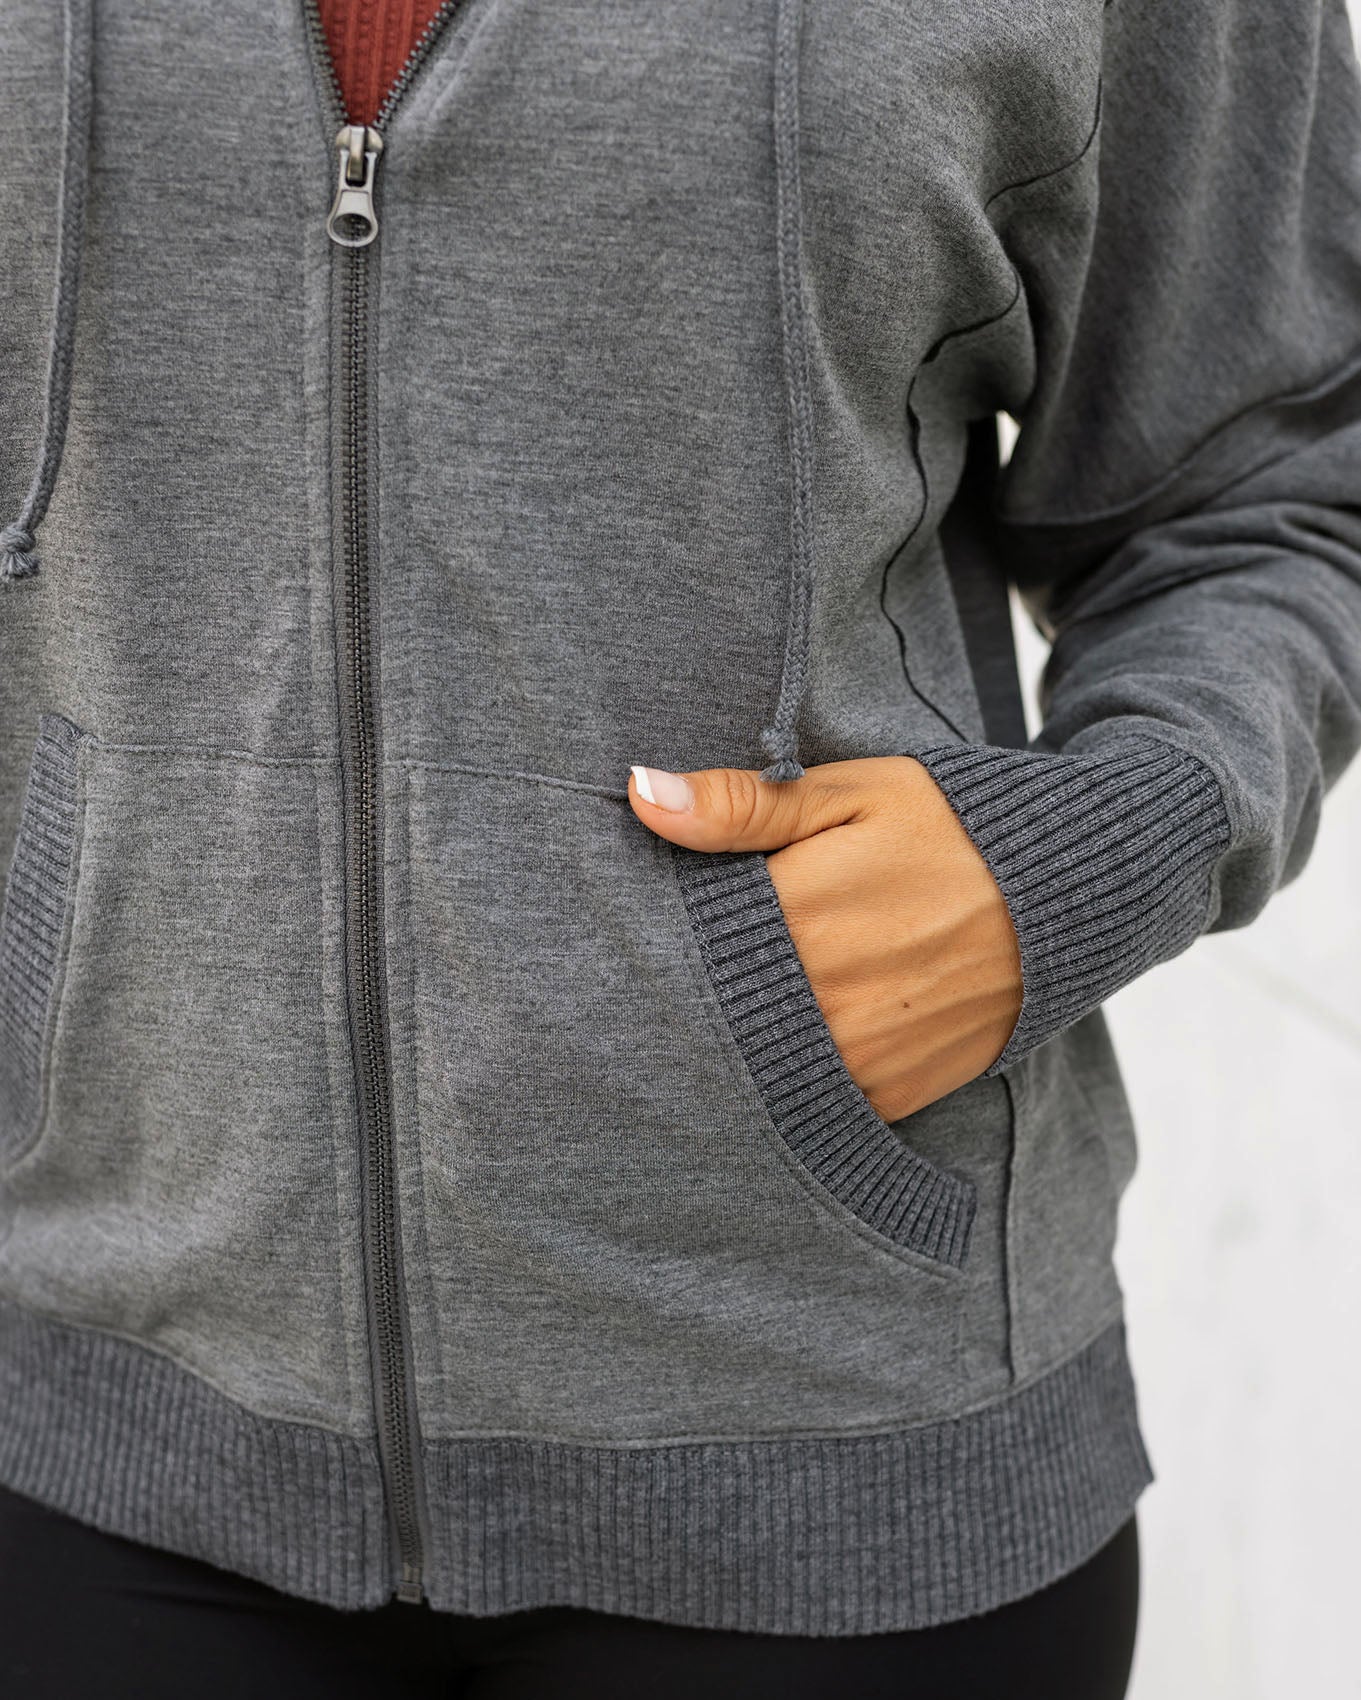 detail view of heathered grey zip up hoodie